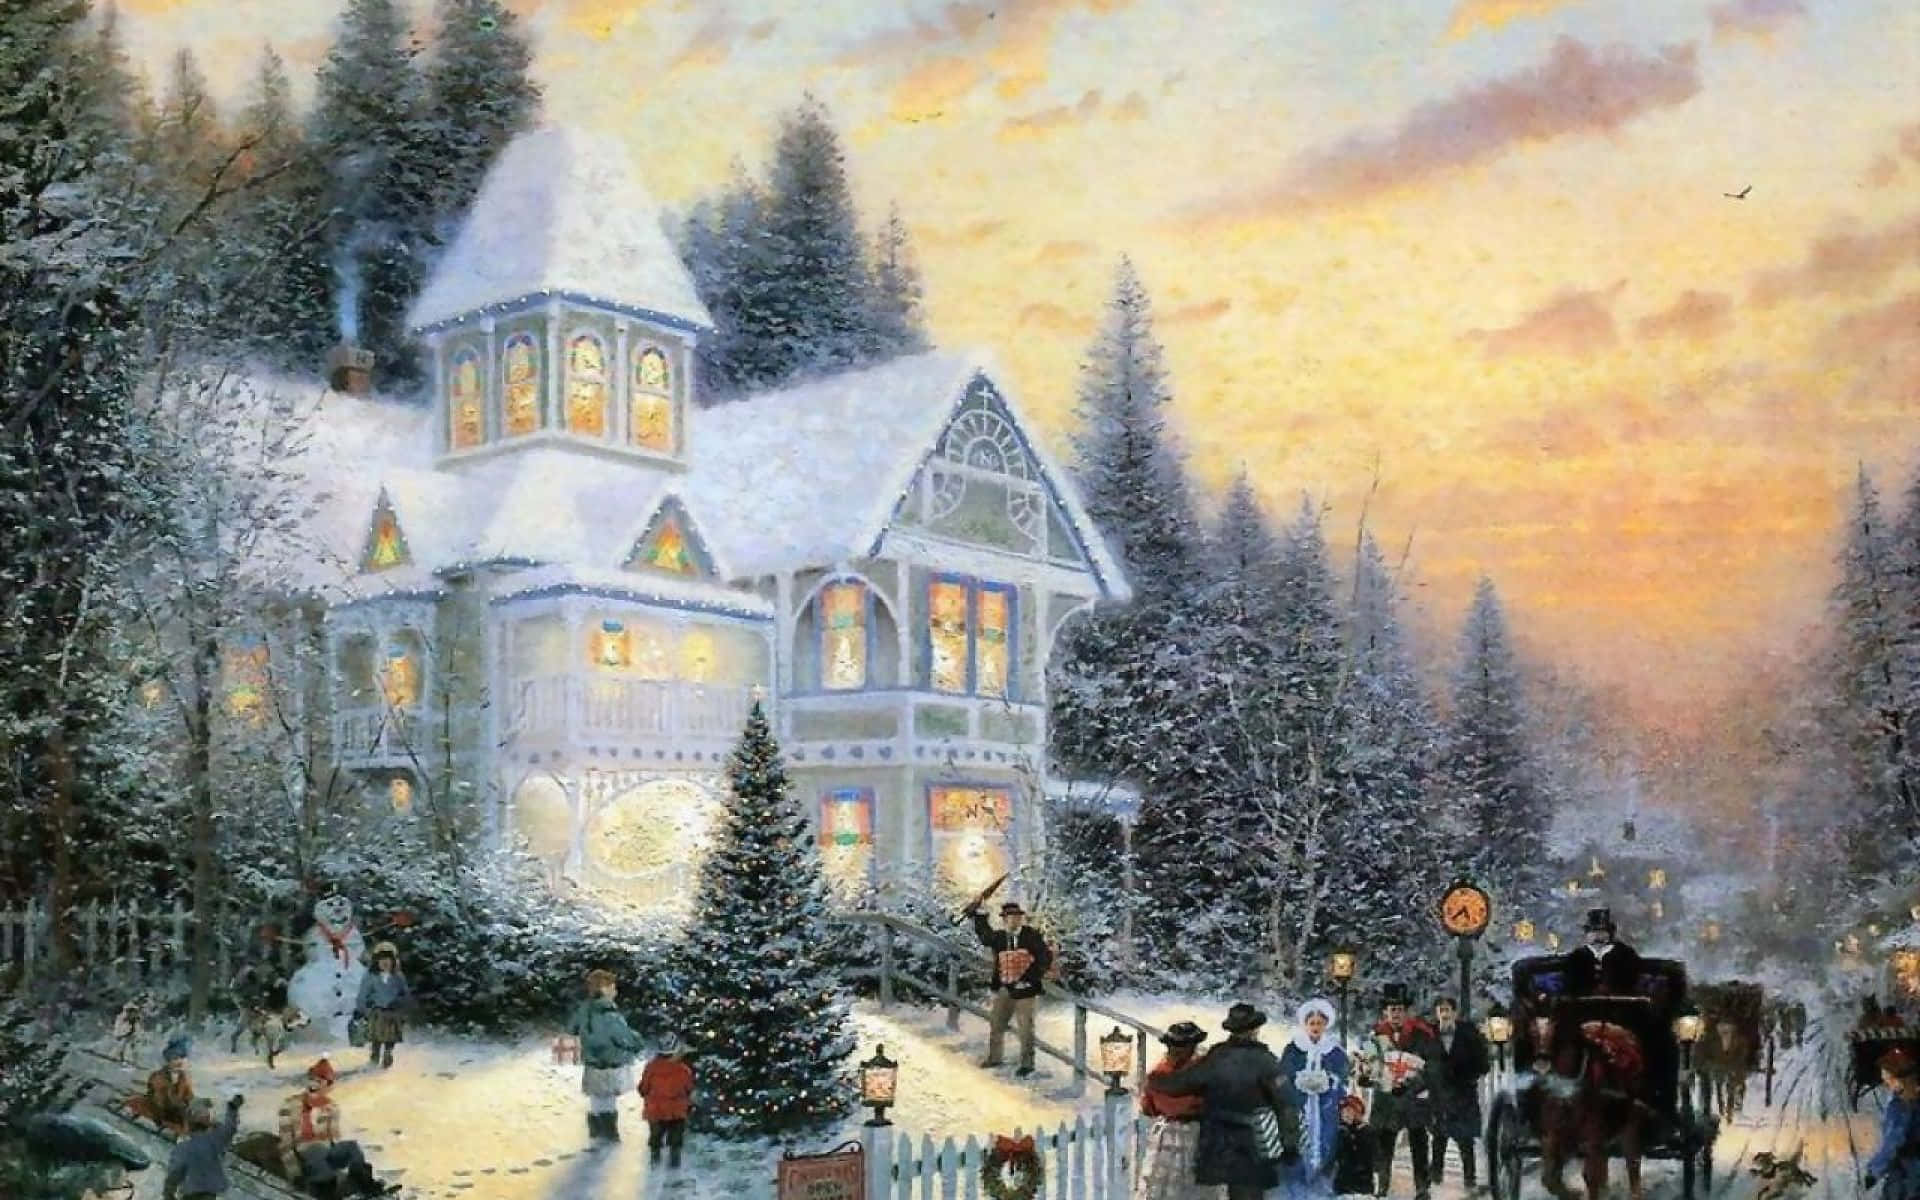 "A Winter Wonderland" Wallpaper